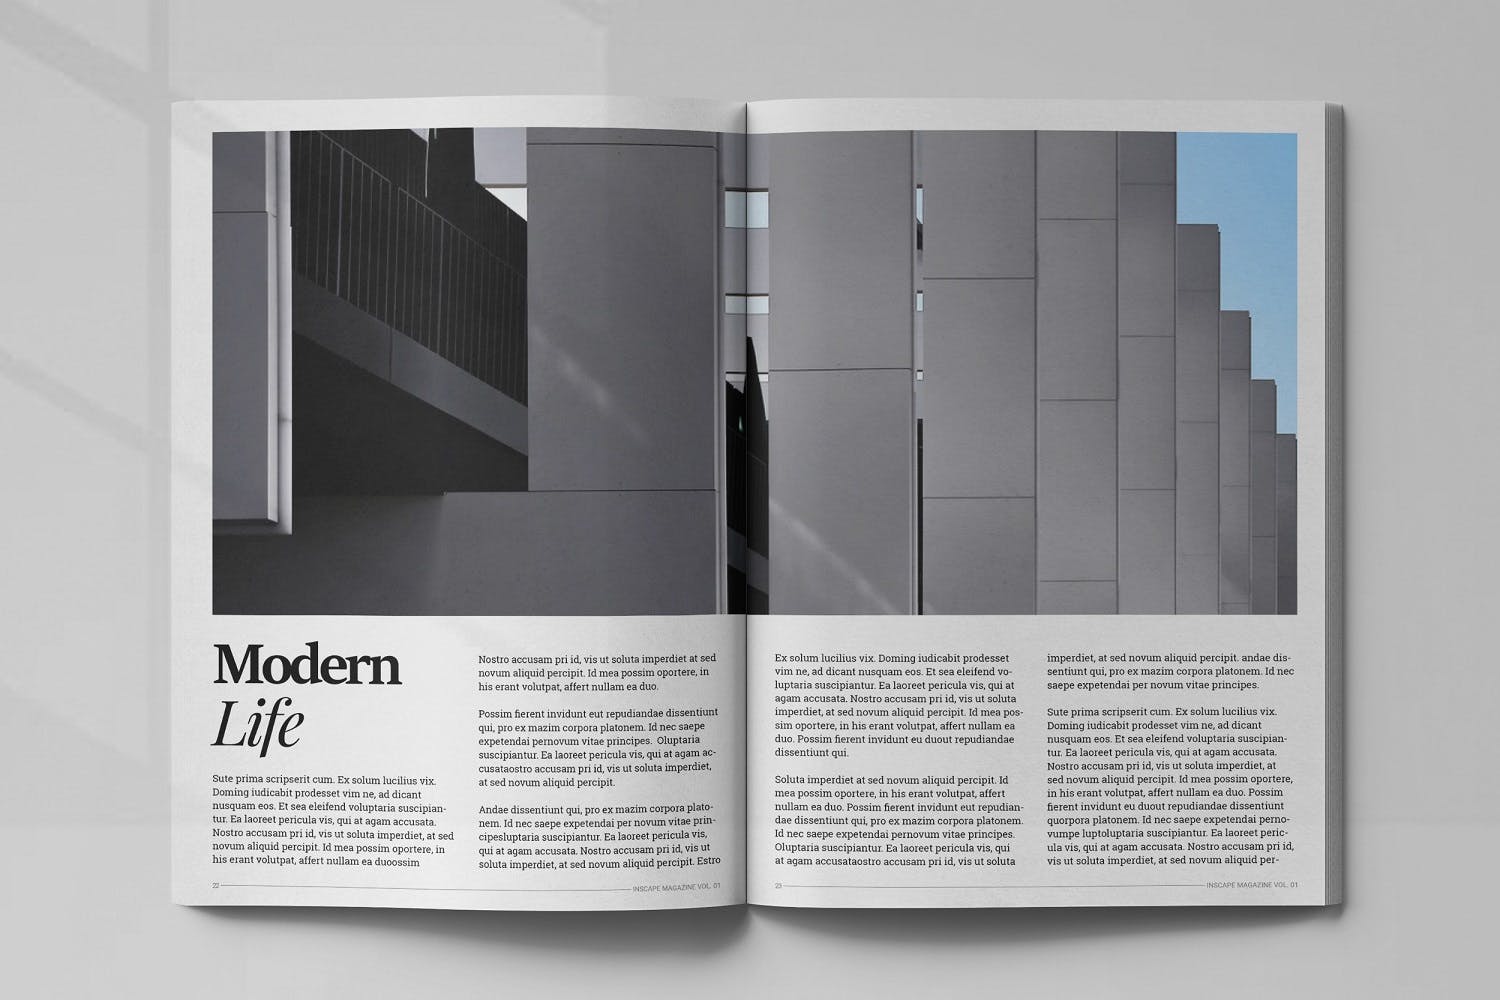 室内设计主题第一素材精选杂志排版设计模板 Inscape Interior Magazine插图(11)